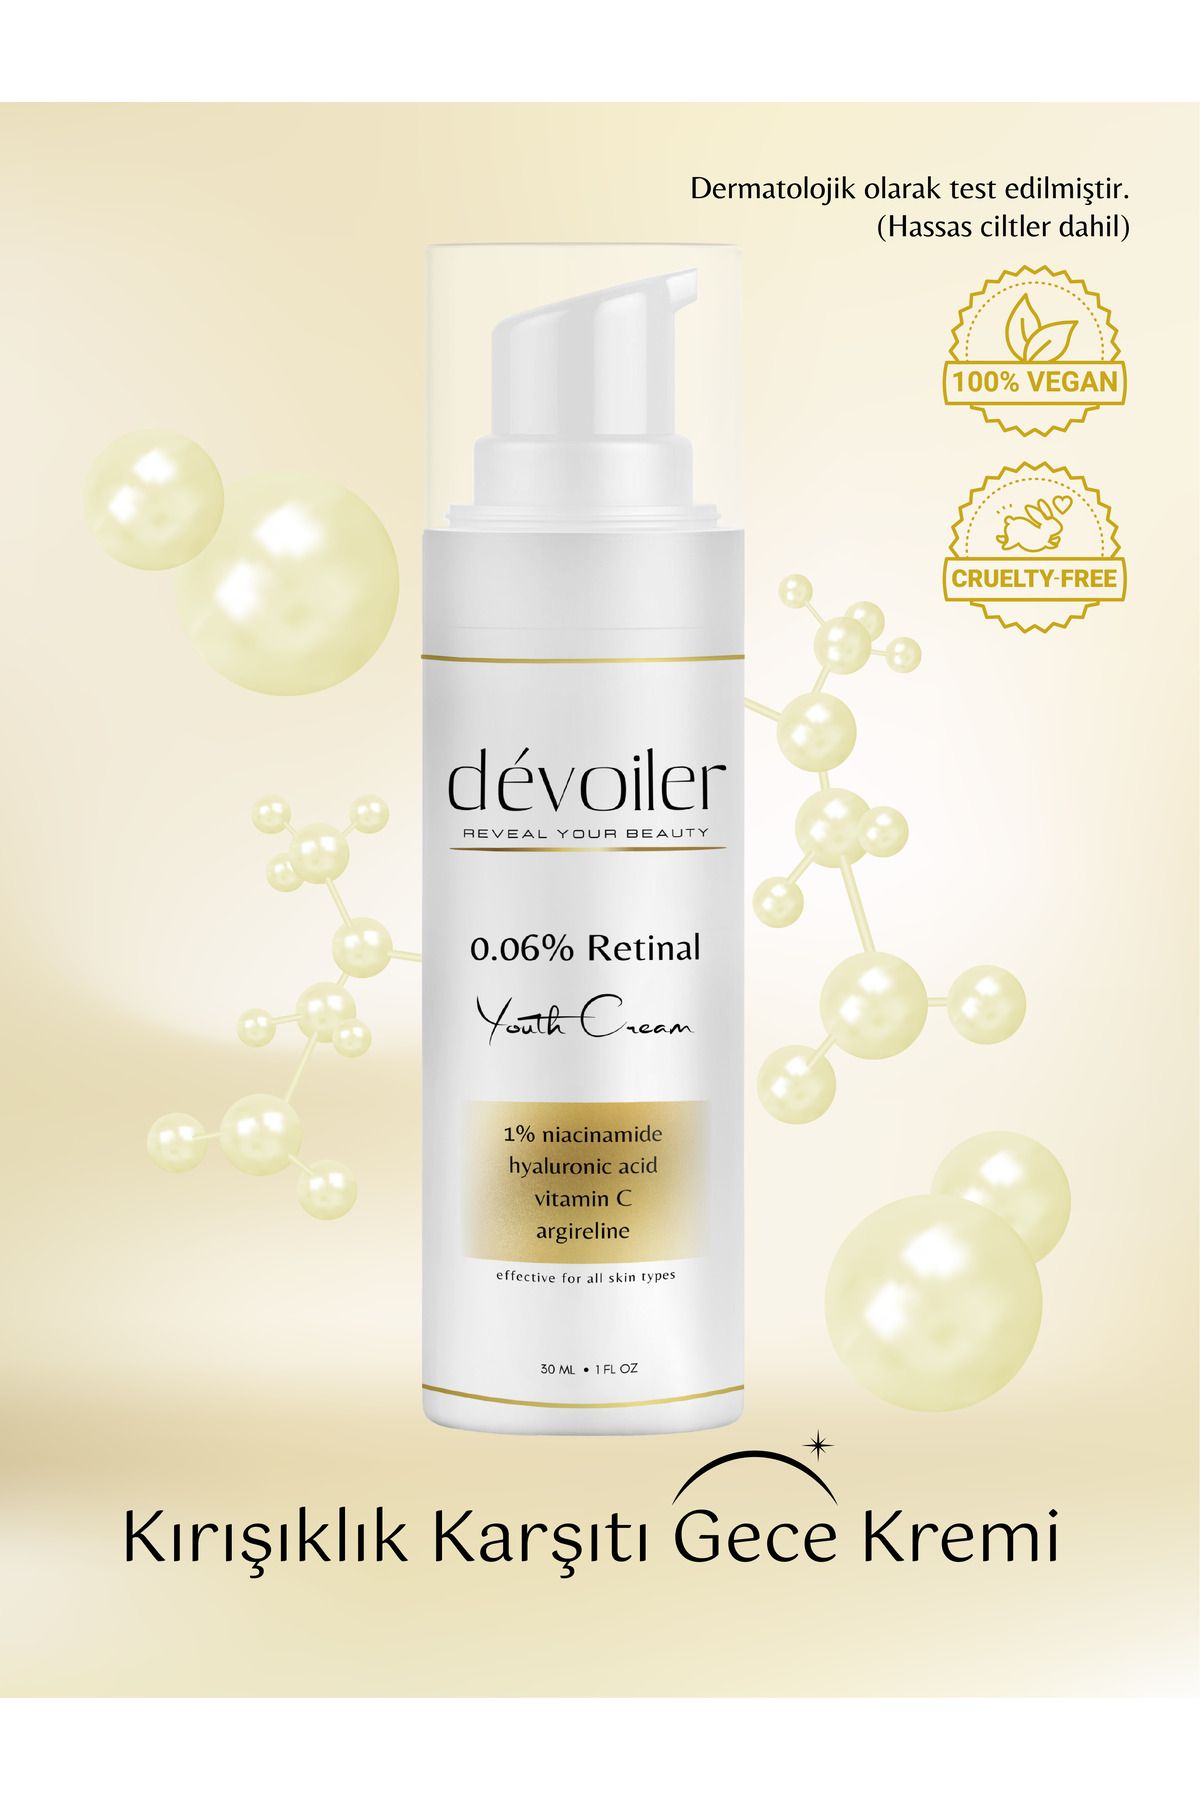 dévoiler reveal your beauty Retinal Youth Cream (%0,06 RETİNAL) Yaşlanma Ve Kırışıklık Karşıtı Bakım Kremi